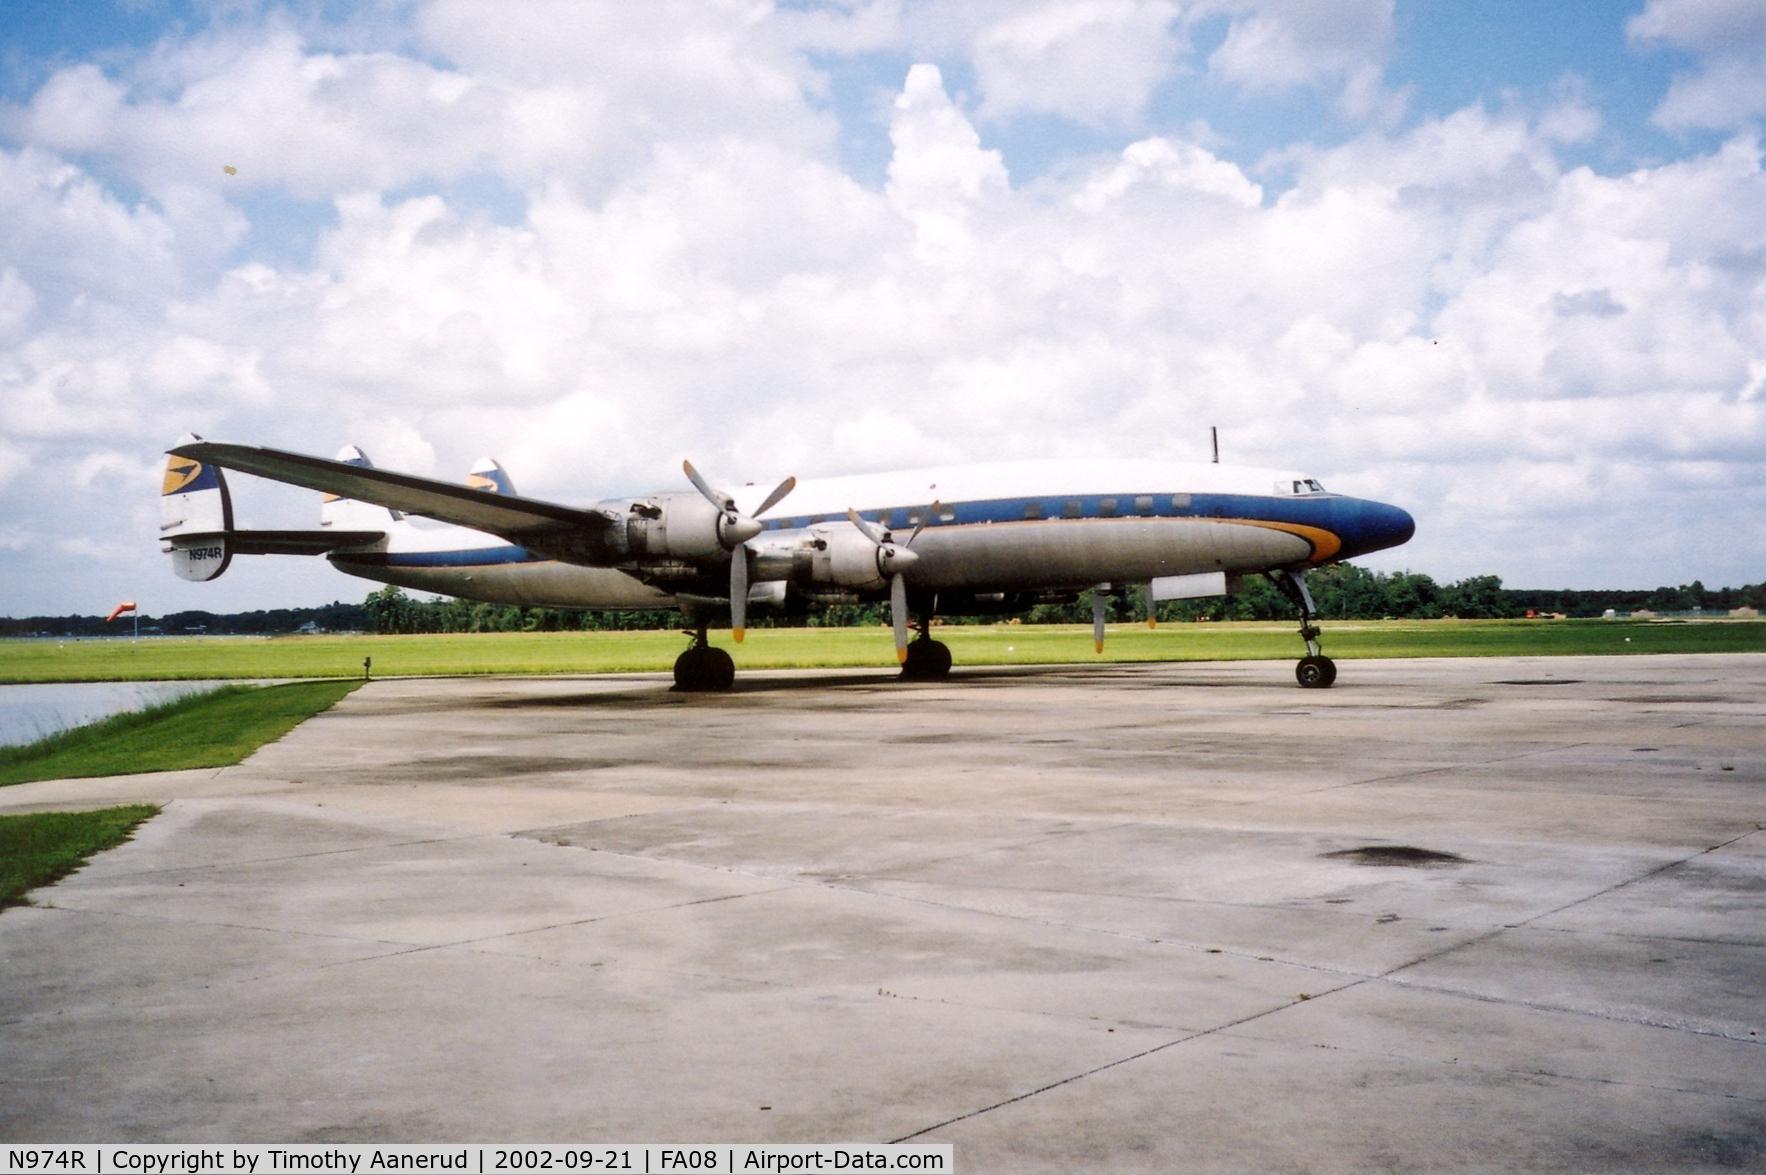 N974R, 1957 Lockheed L-1649A-98 Starliner C/N 1040, Parked at Fantasy of Flight